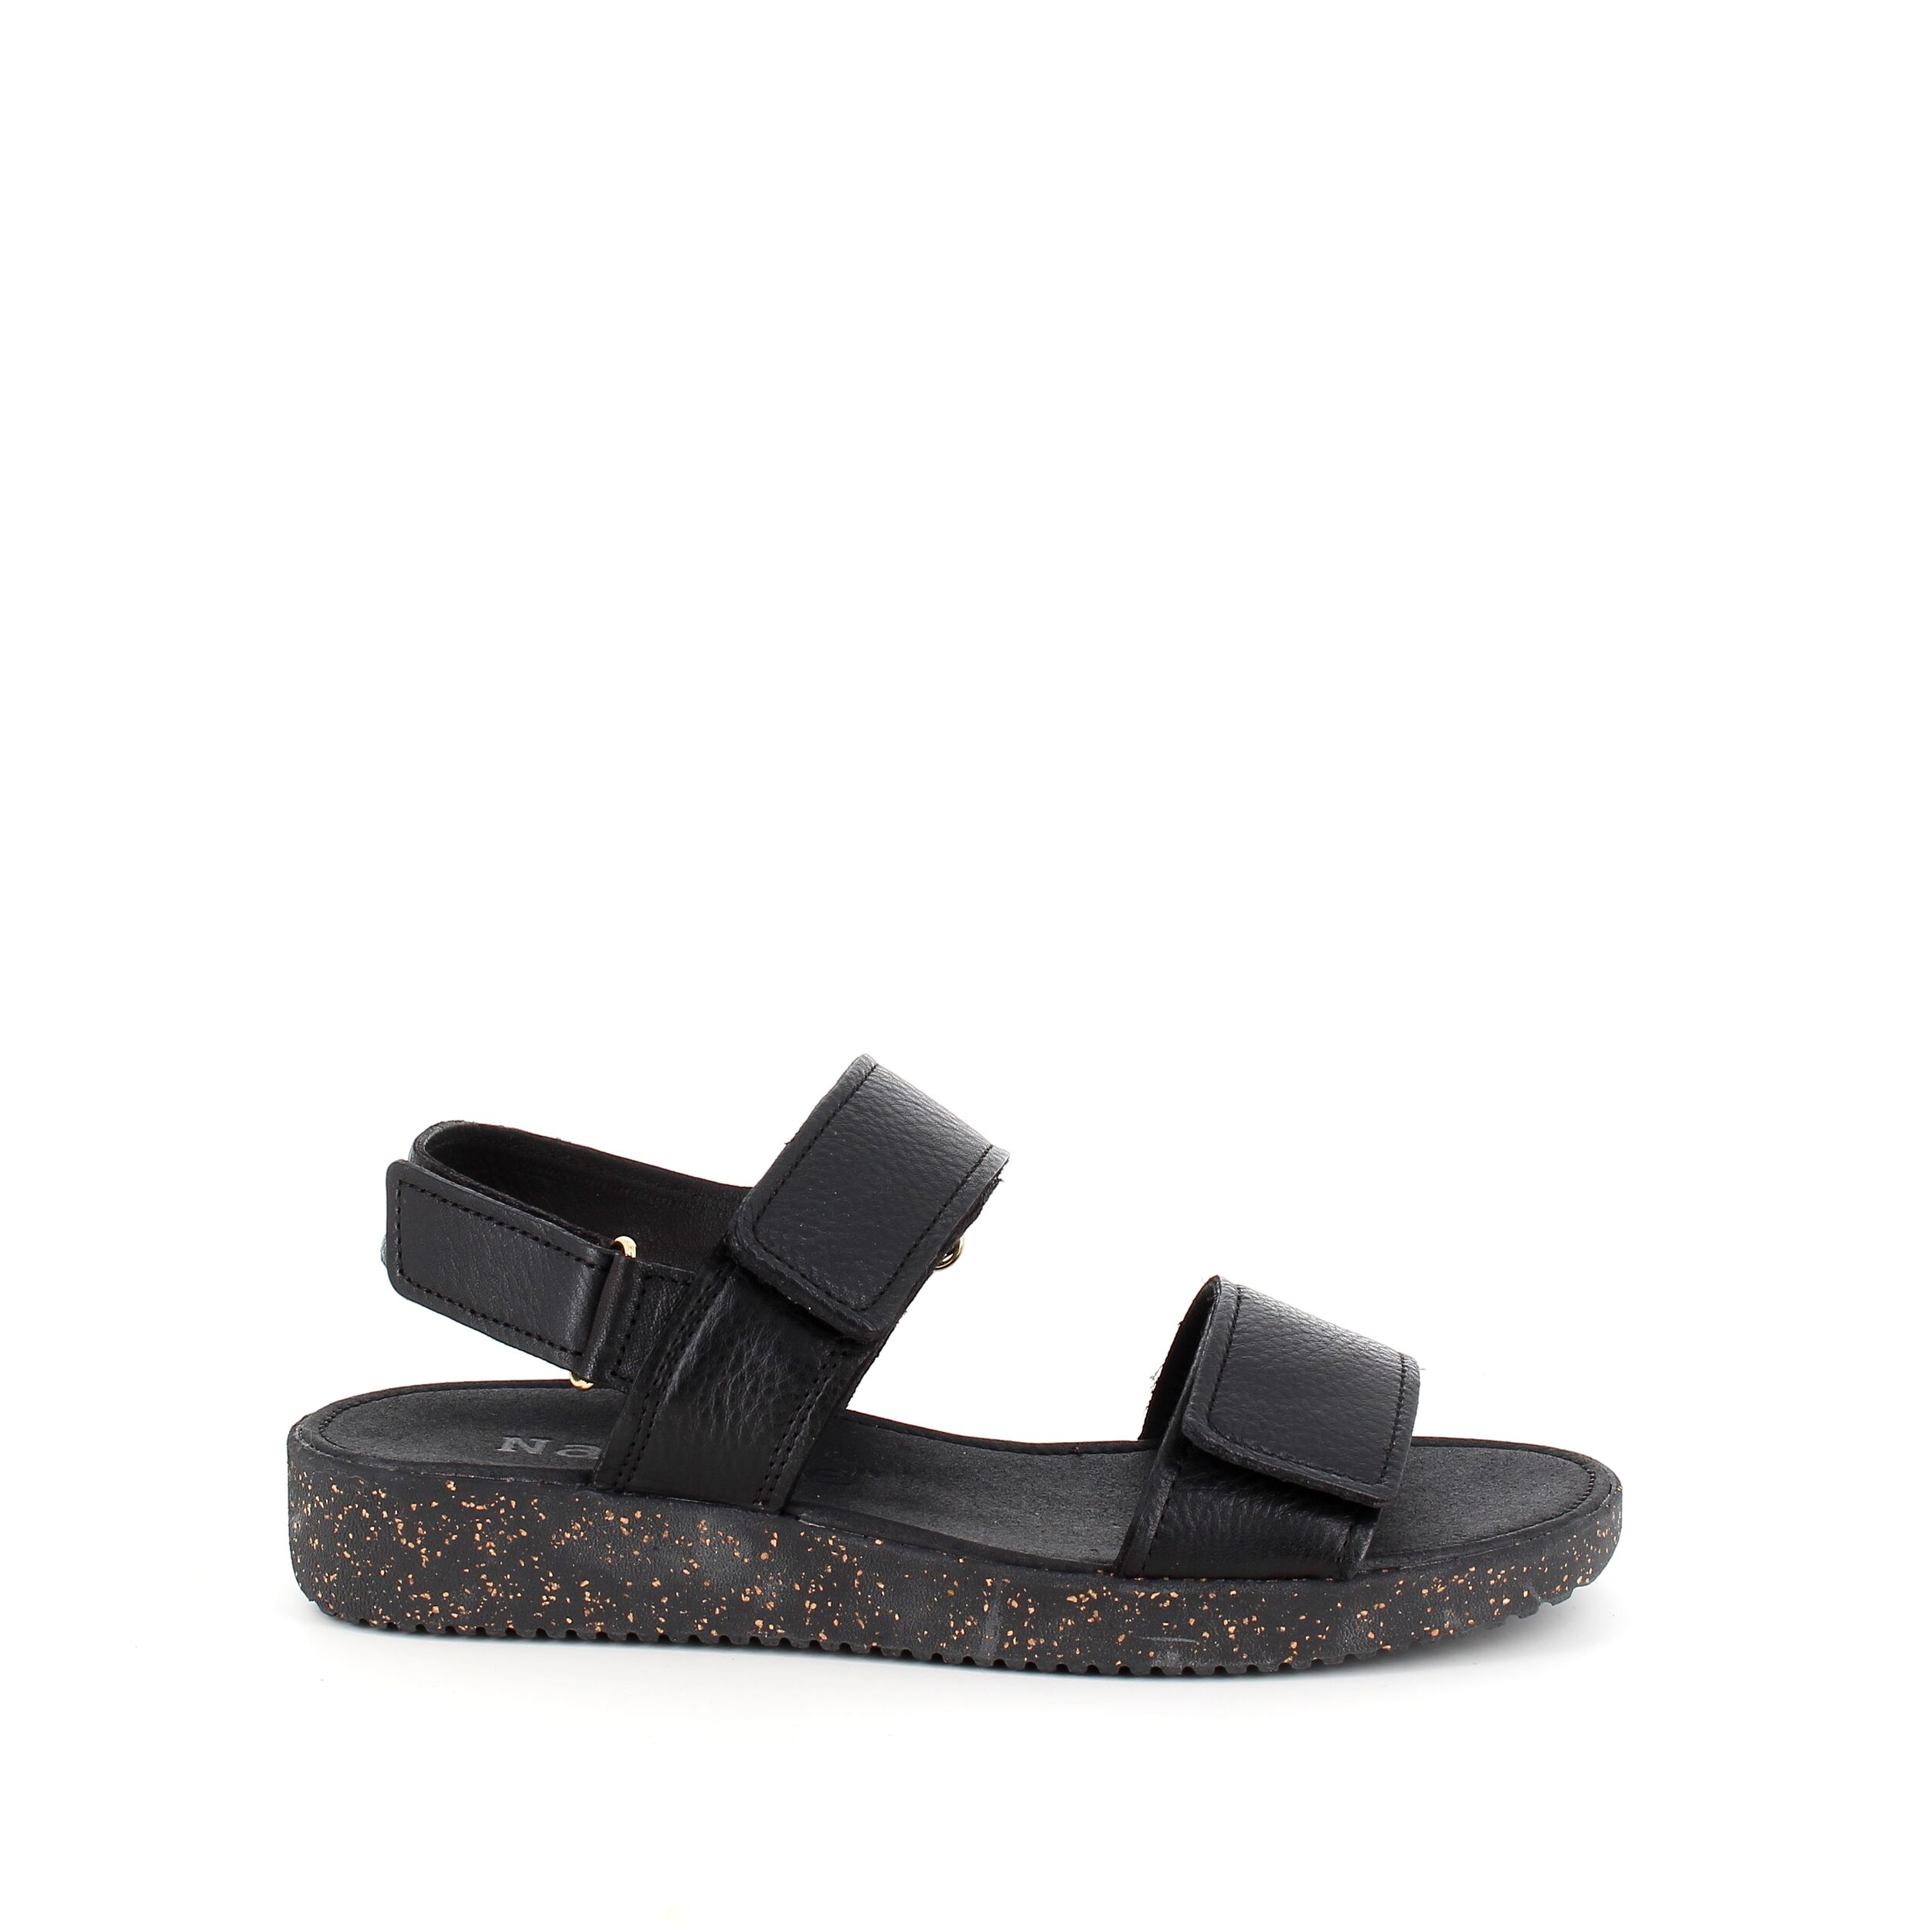 Se Nature sandal i sort skind med sorte såler - 37 hos Sygeplejebutikken.dk